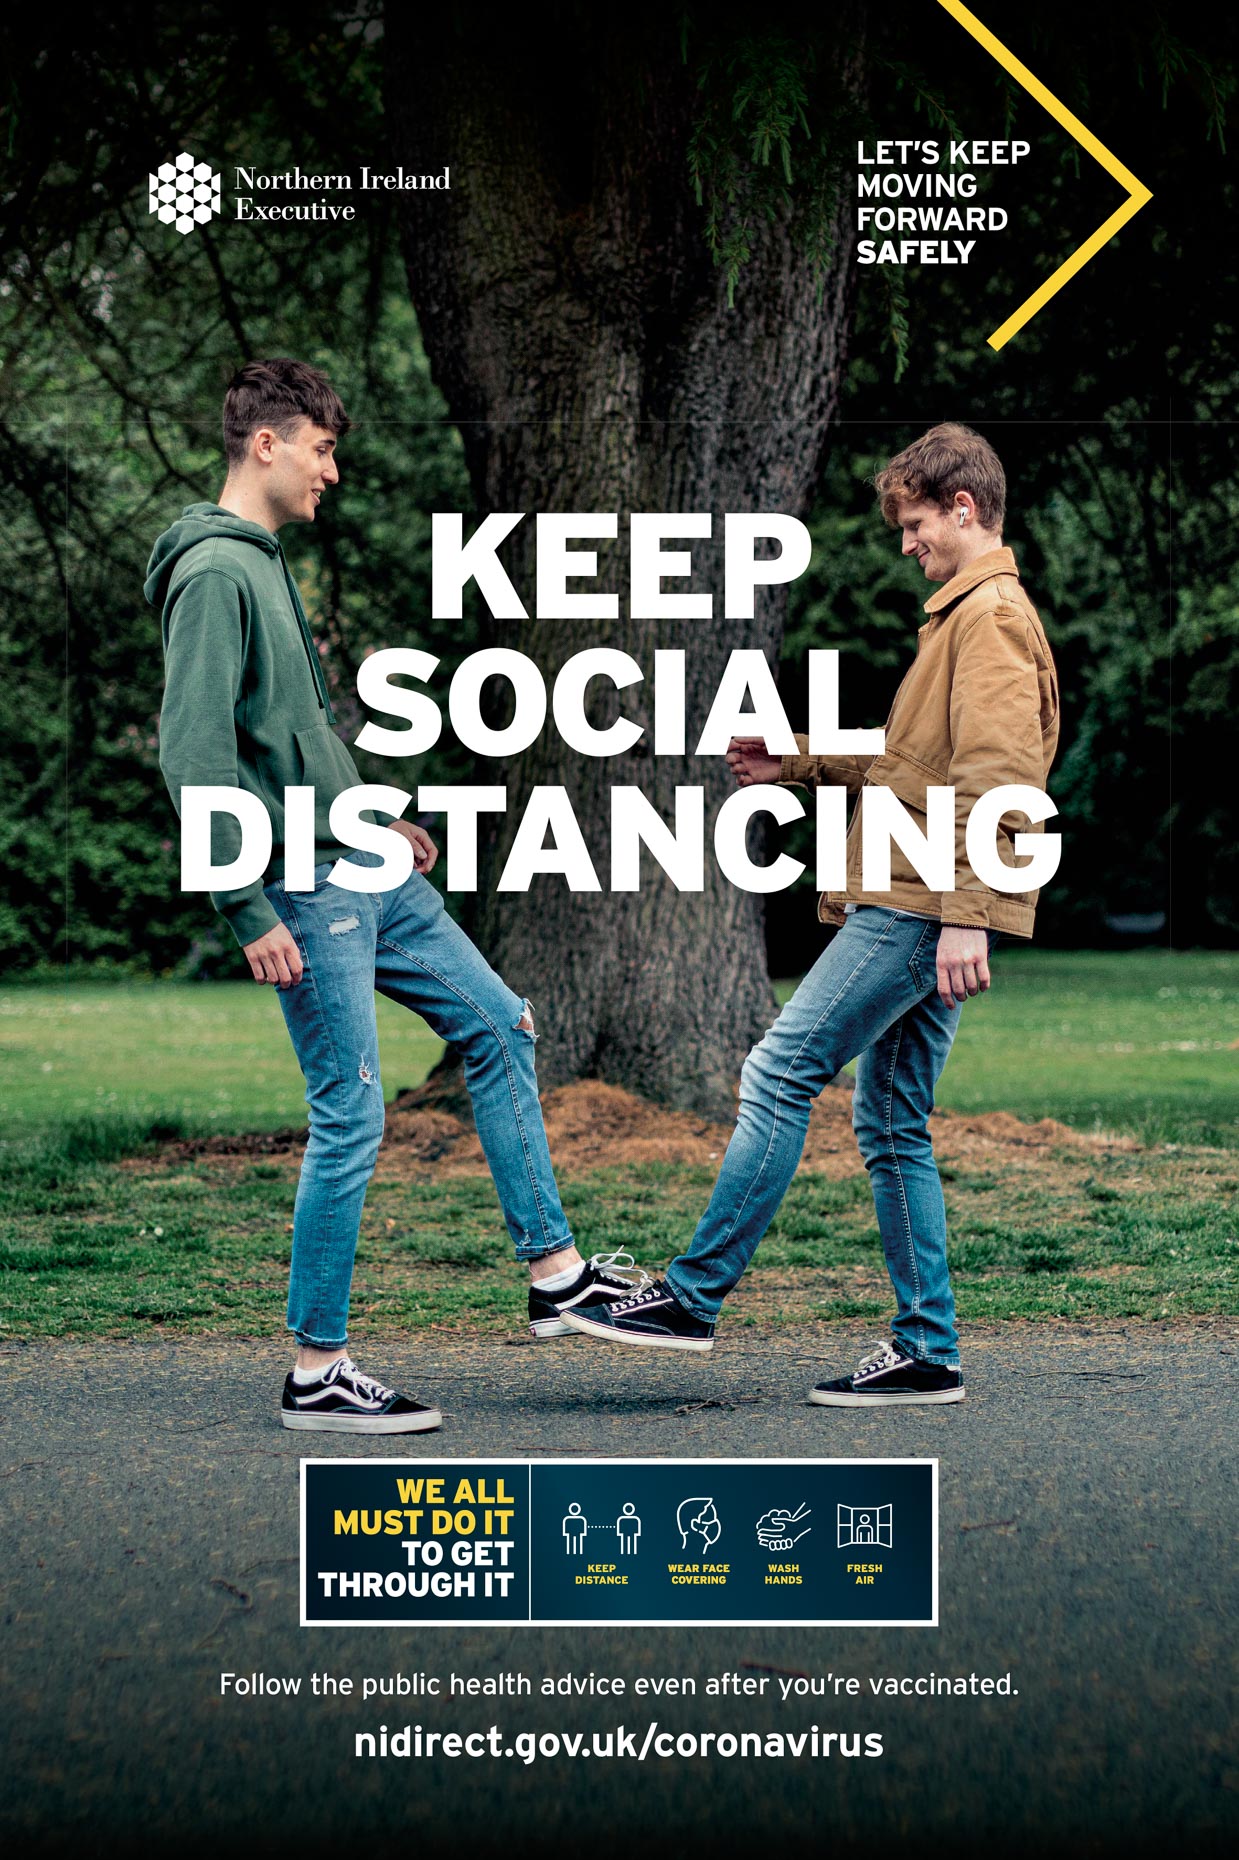 Moving Forward, lets keep social distancing.